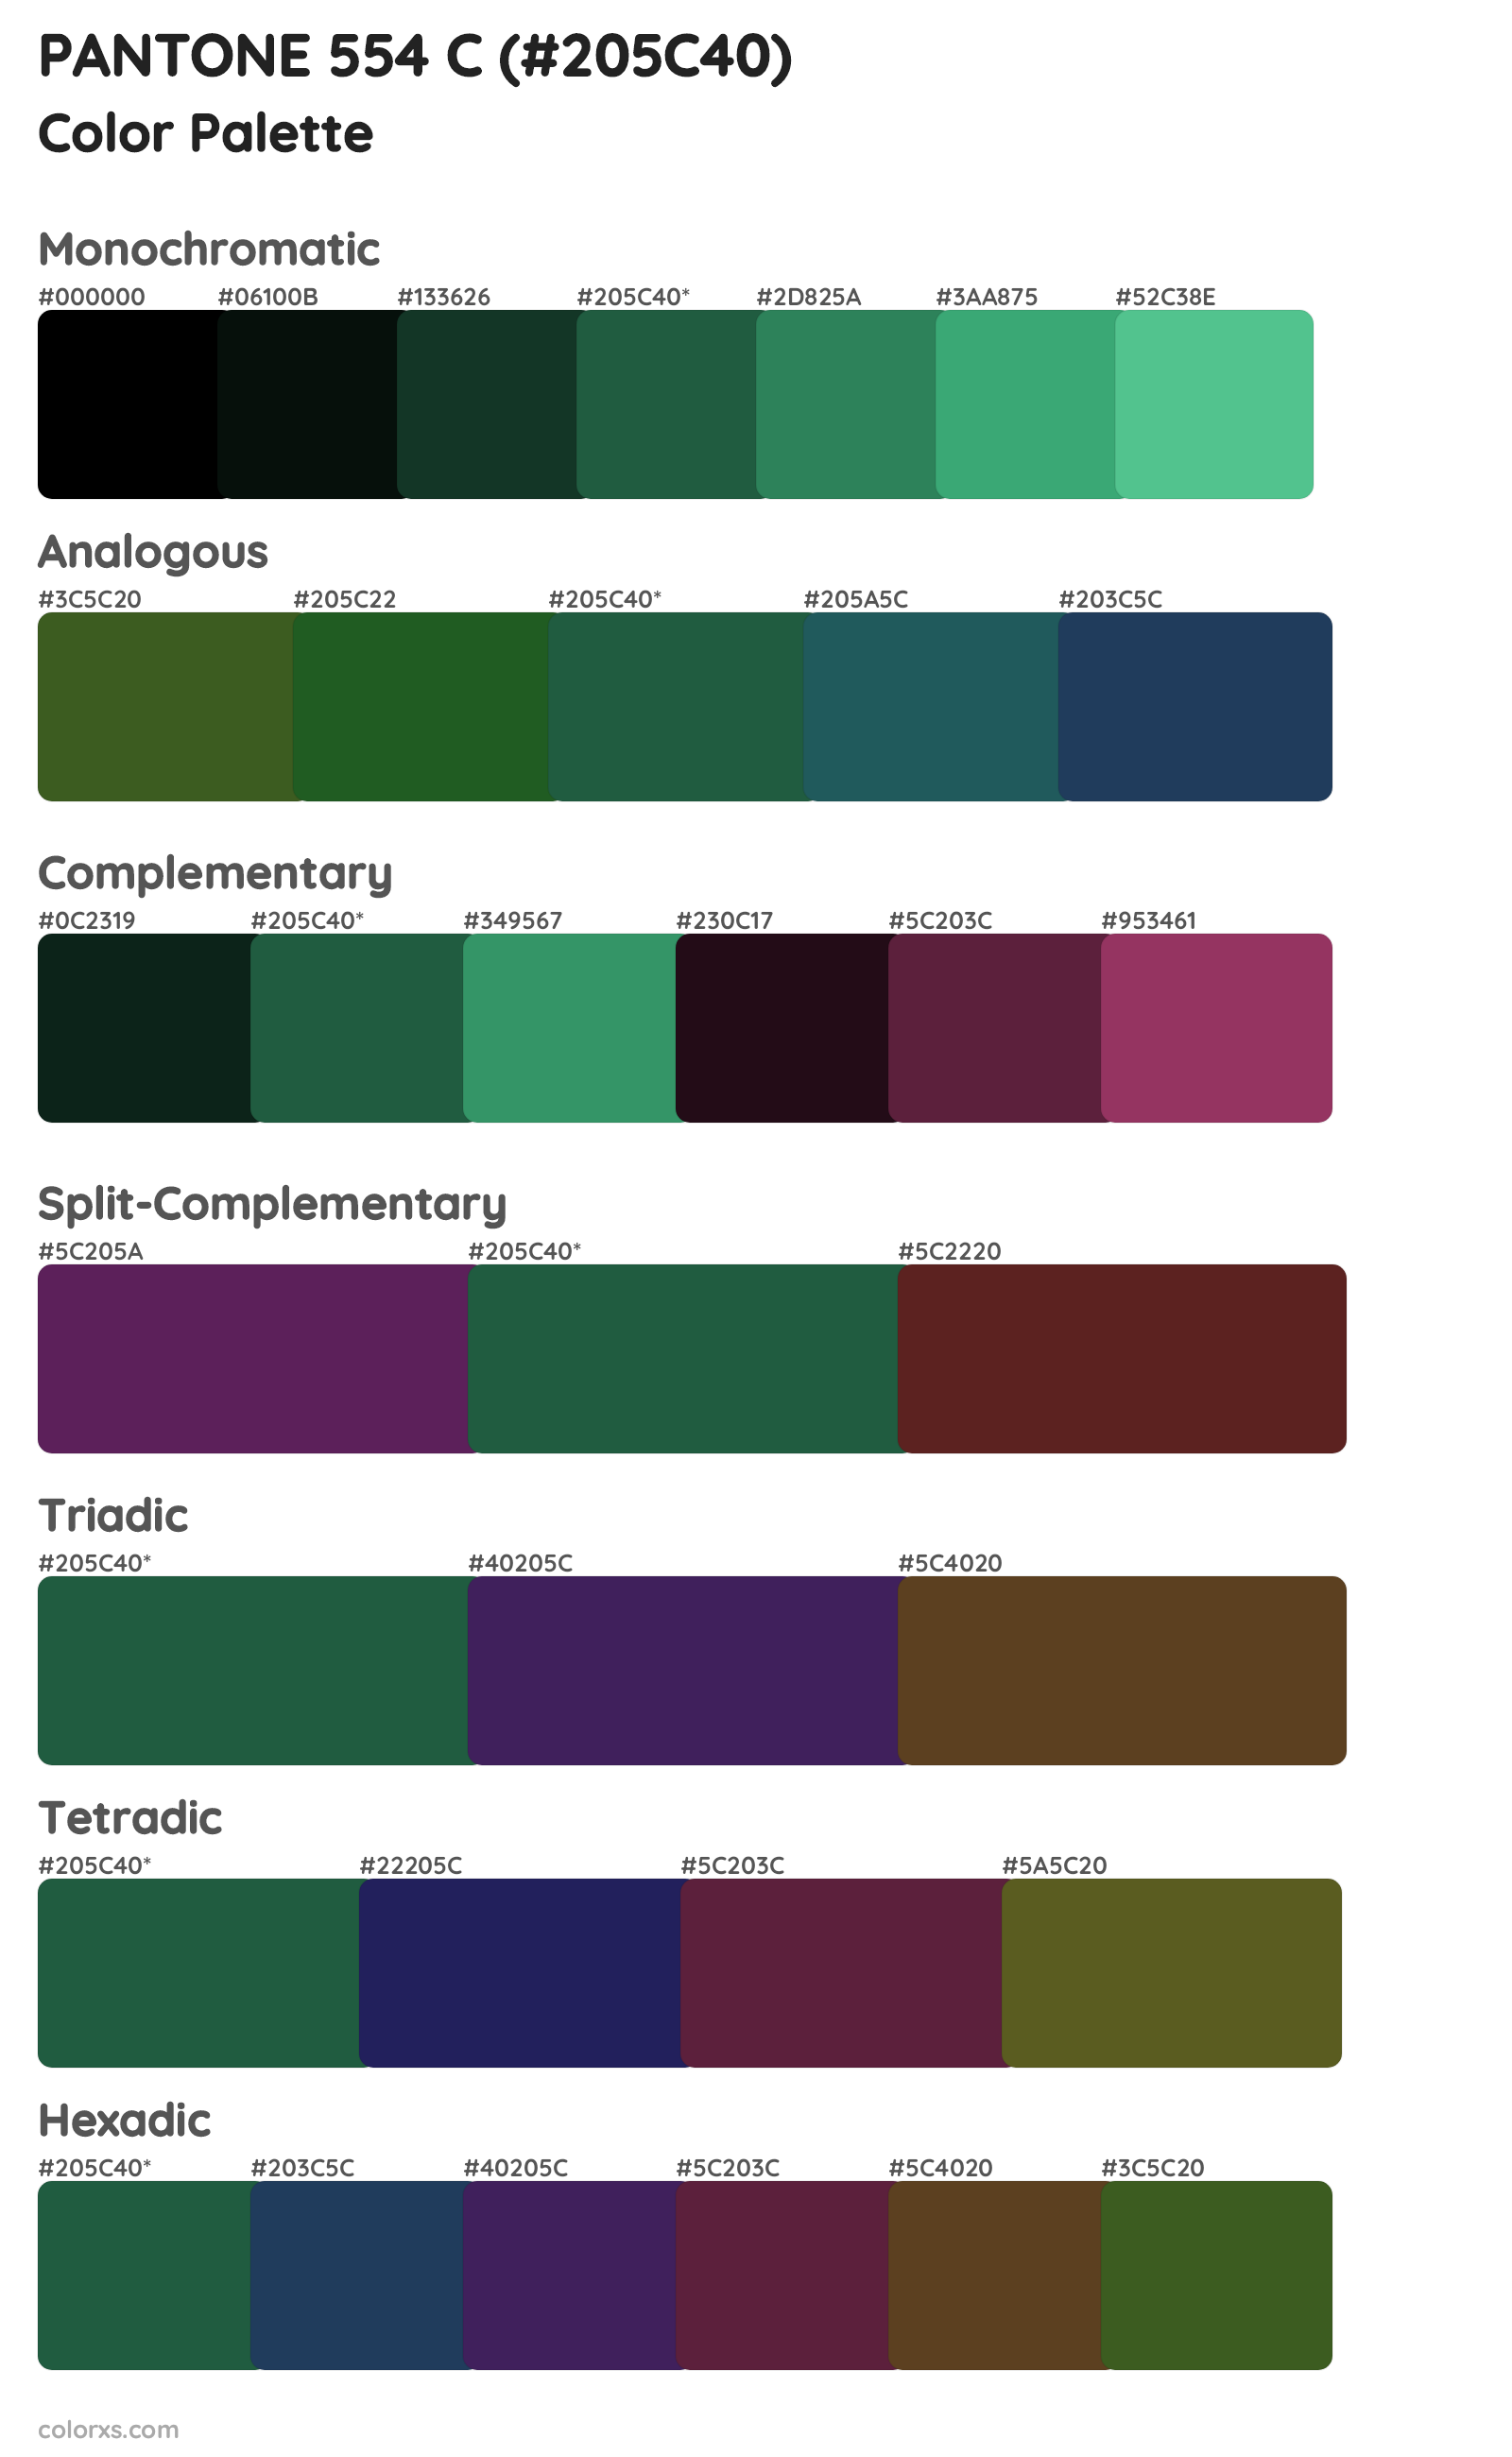 PANTONE 554 C Color Scheme Palettes